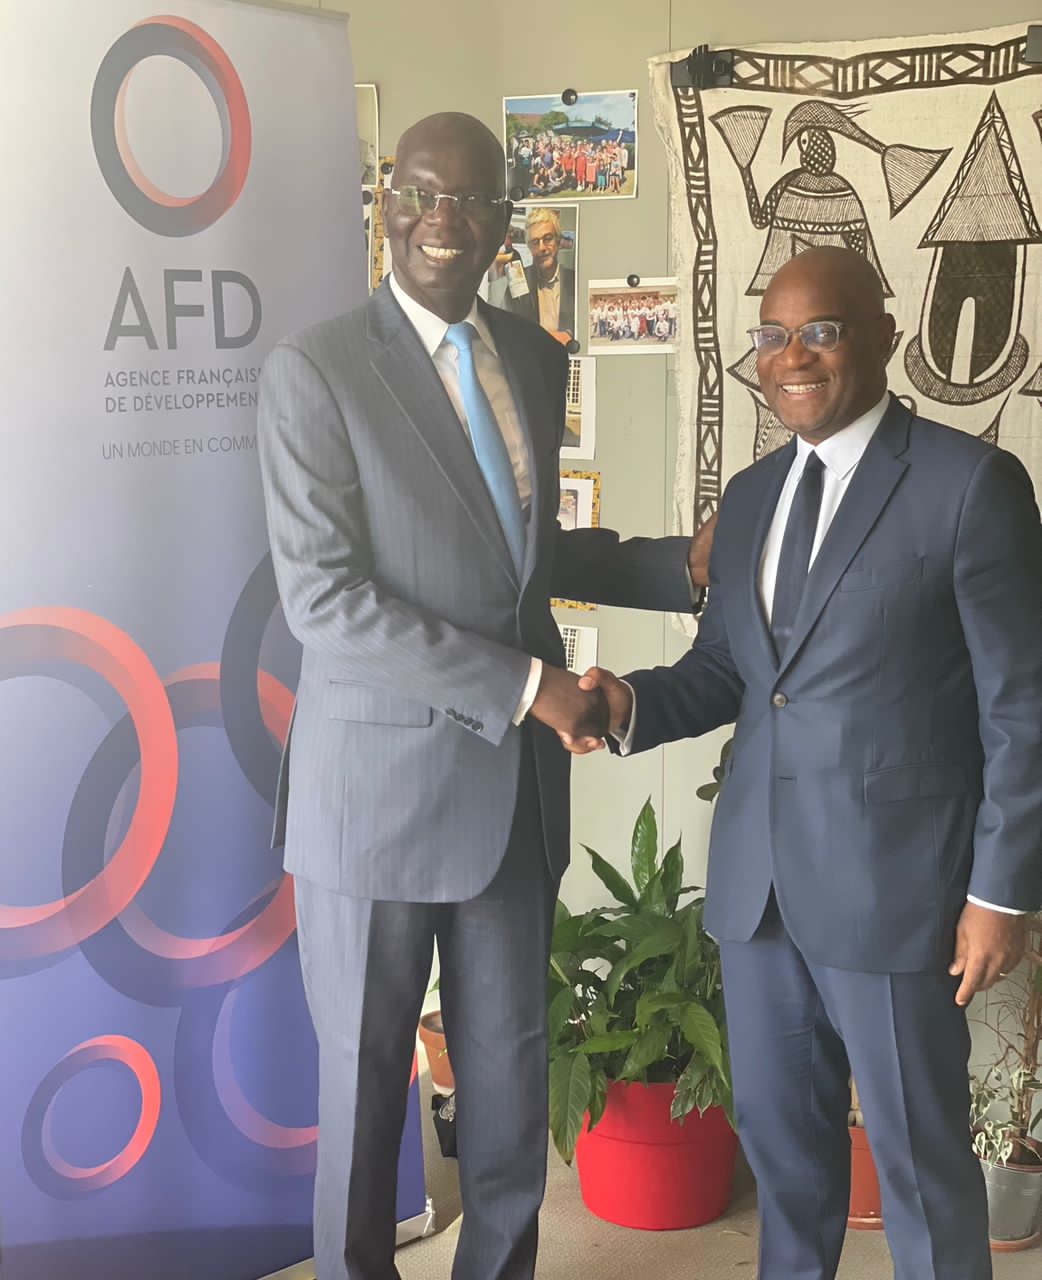 وزير الشؤون الاقتصادية مع مدير قطاع افريقيا بوكالة التنمية الفرنسية